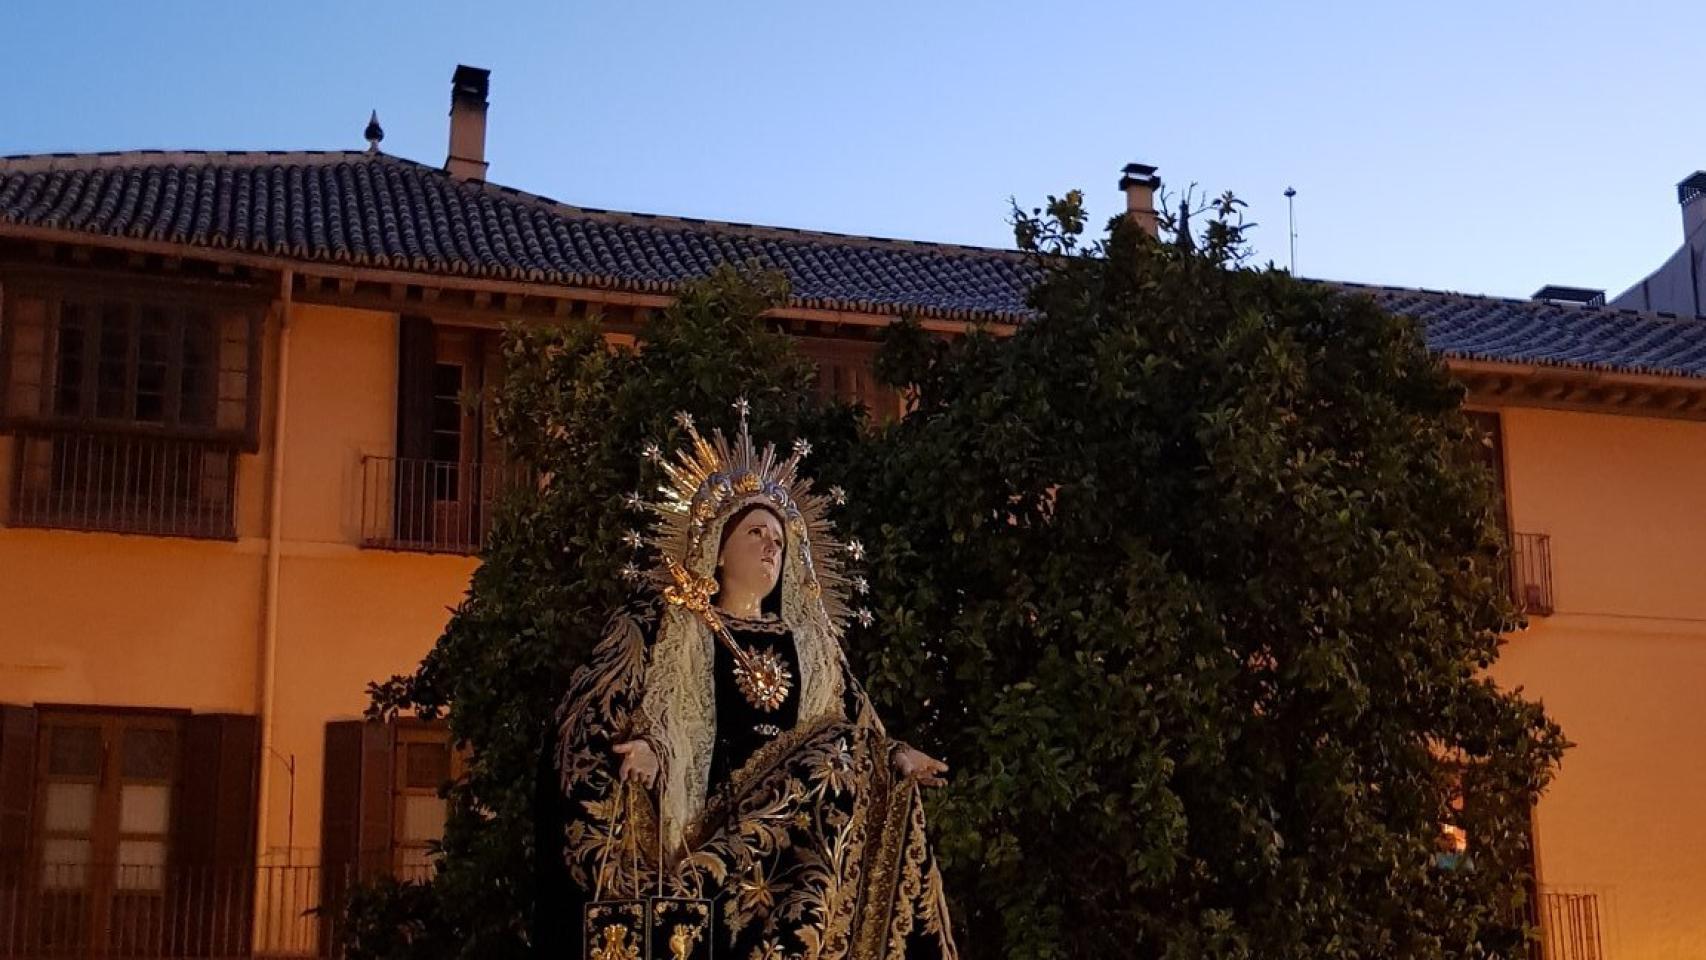 Madrugada de traslados en Málaga tras meses de abstinencia: así han pasado las 13 imágenes por la Catedral